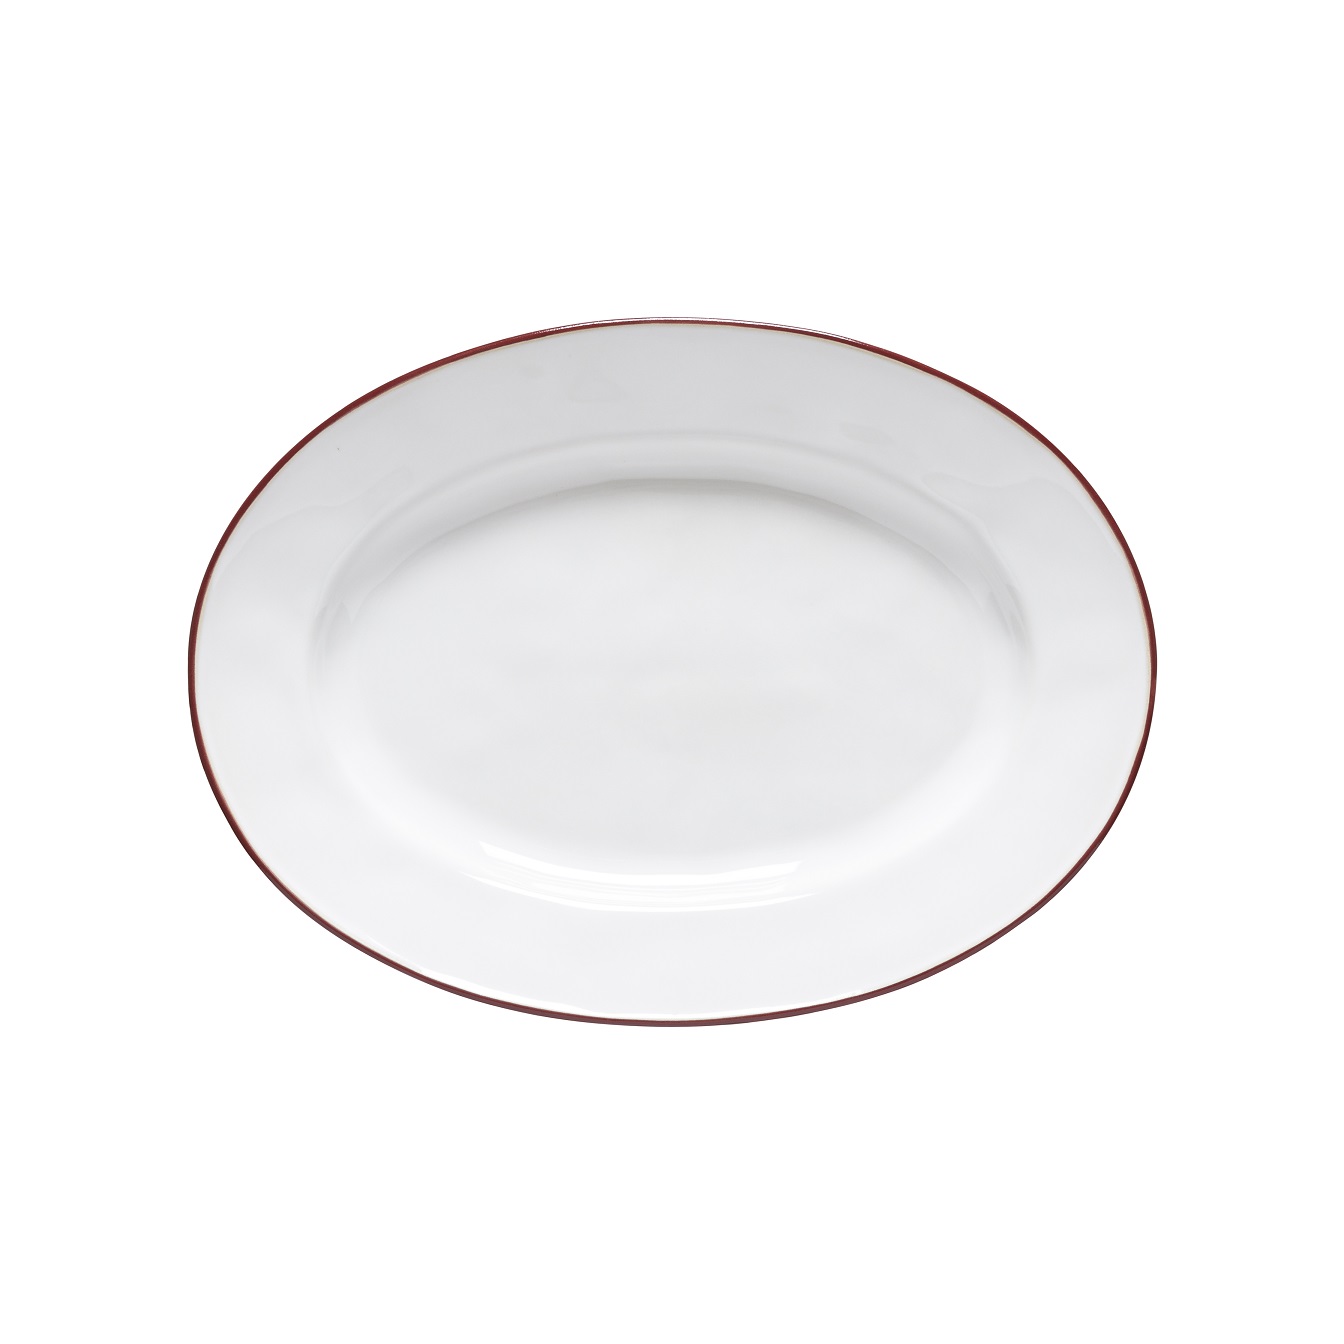 Beja Wht/red Oval Platter Medium 30cm Gift